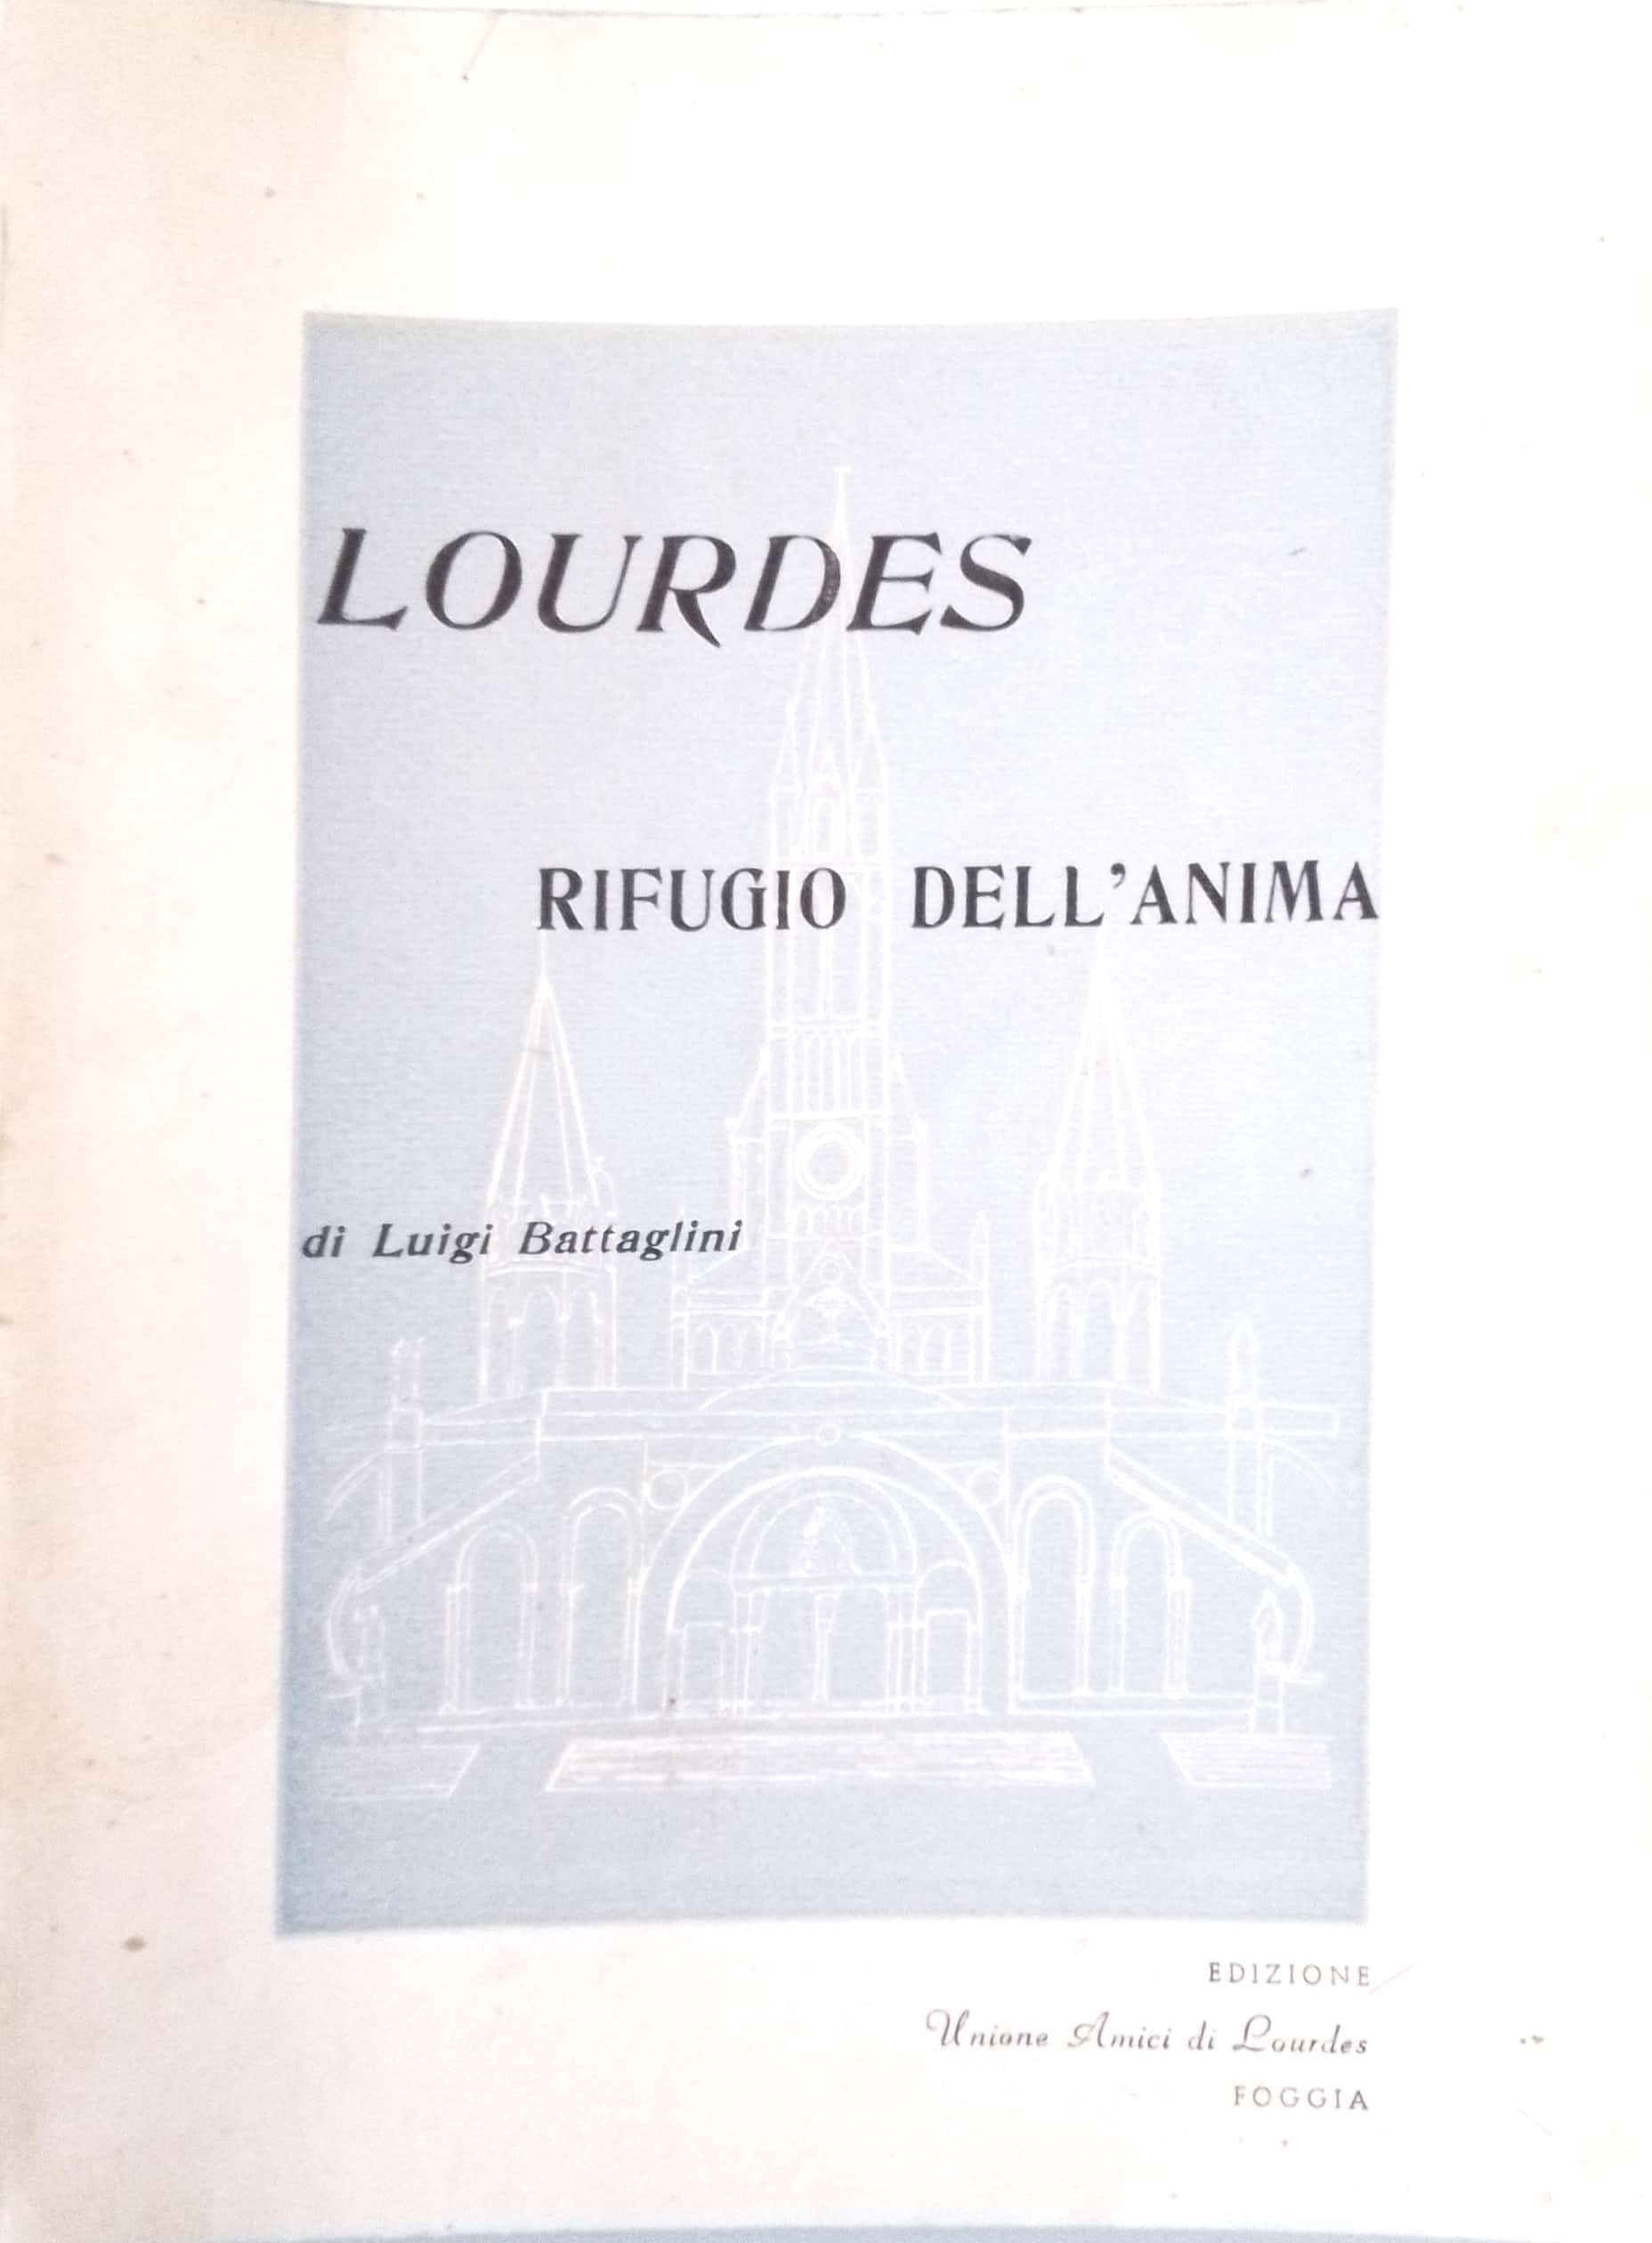 Copertina di Lourdes rifugio dell'animo